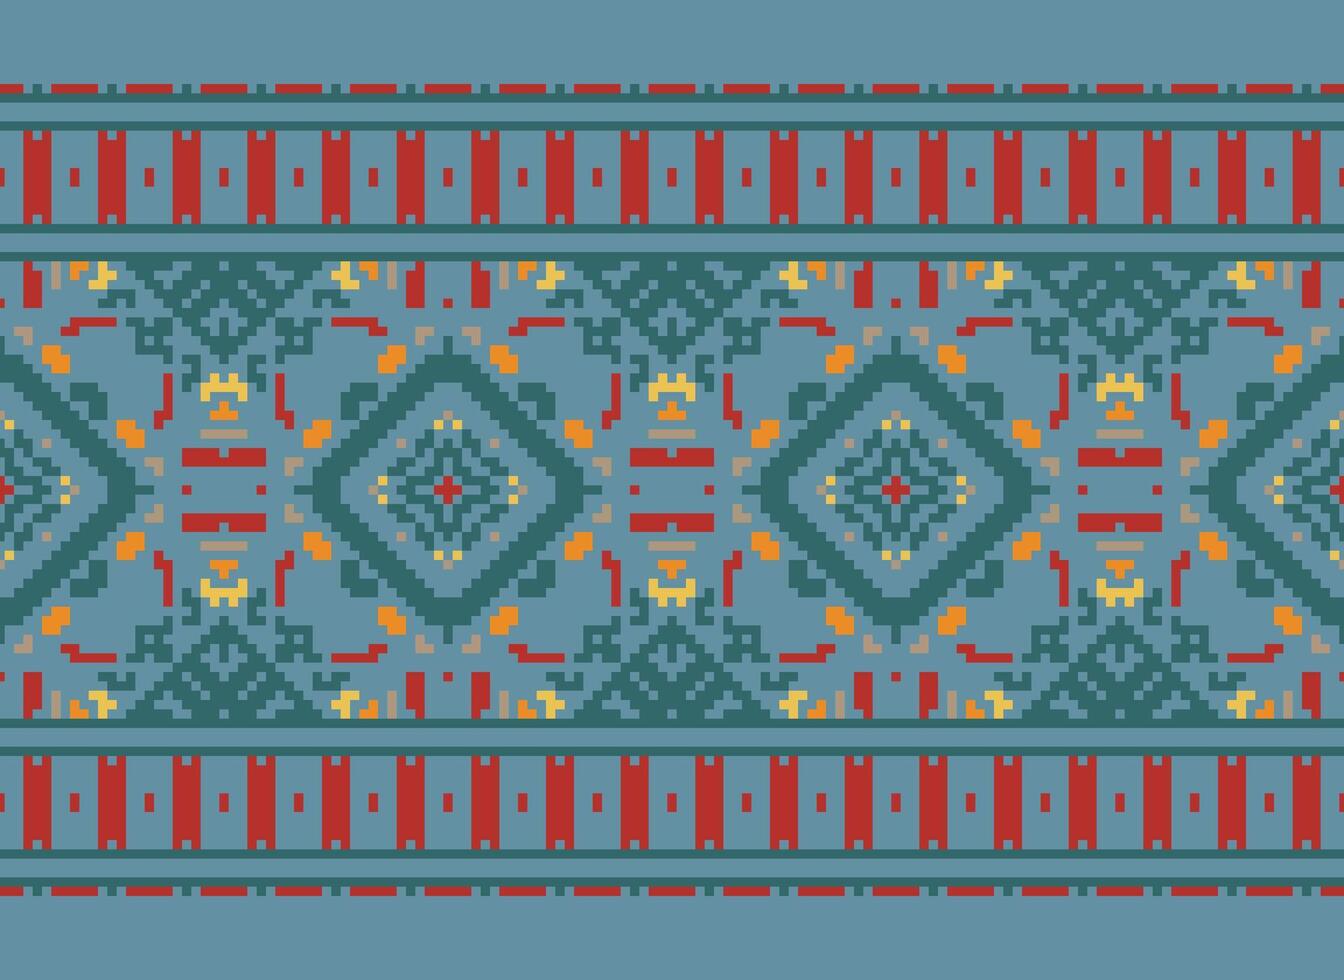 pixel etnisch patroon vector achtergrond. naadloos patroon traditioneel, ontwerp voor achtergrond, behang, batik, kleding stof, tapijt, kleding, inpakken, en textiel.etnisch patroon vector illustratie.